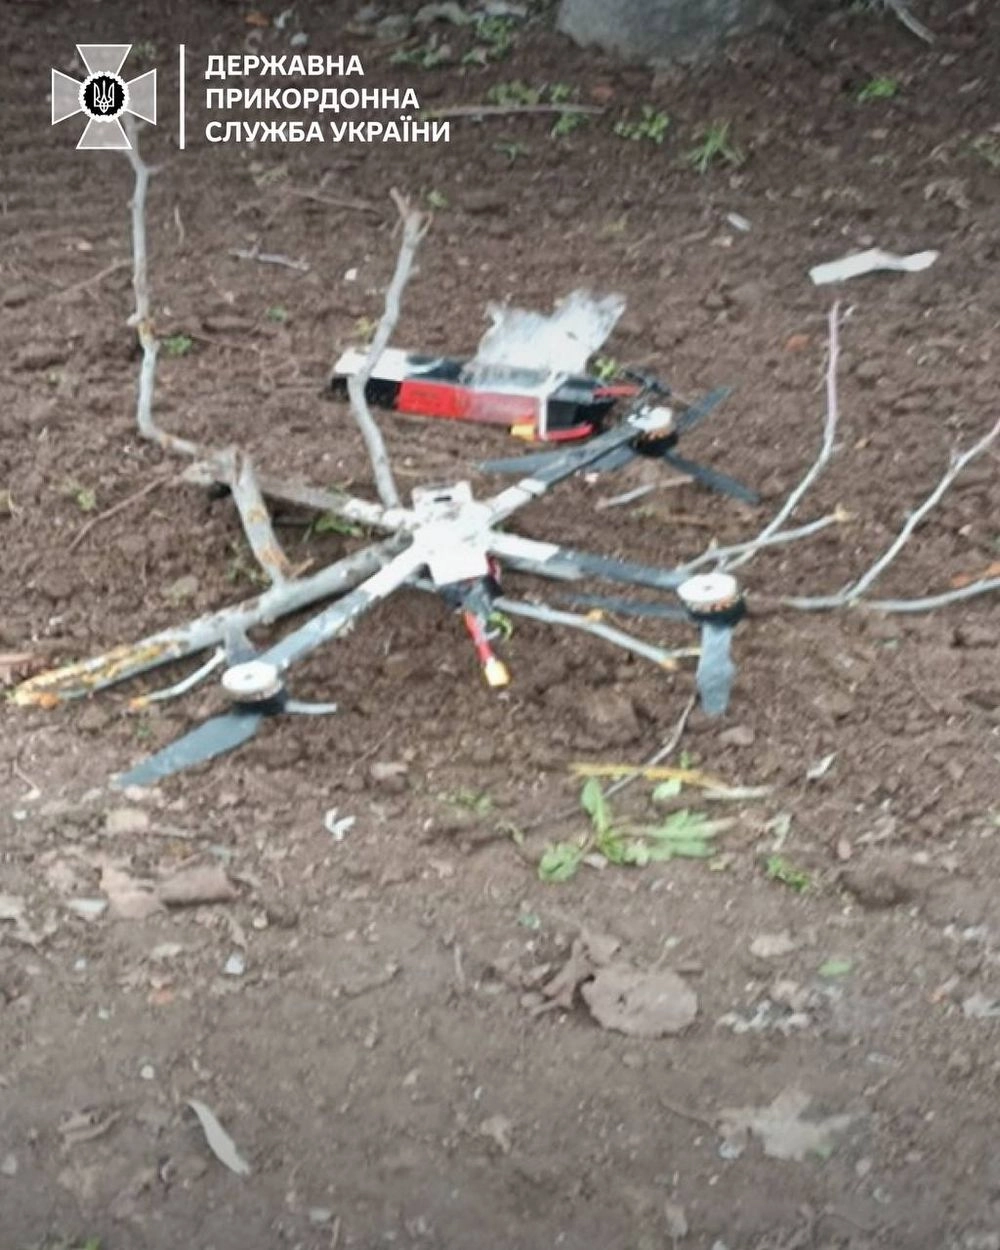 Ukrainian border guards repel massive attack of enemy FPV drones in Zaporizhzhia sector